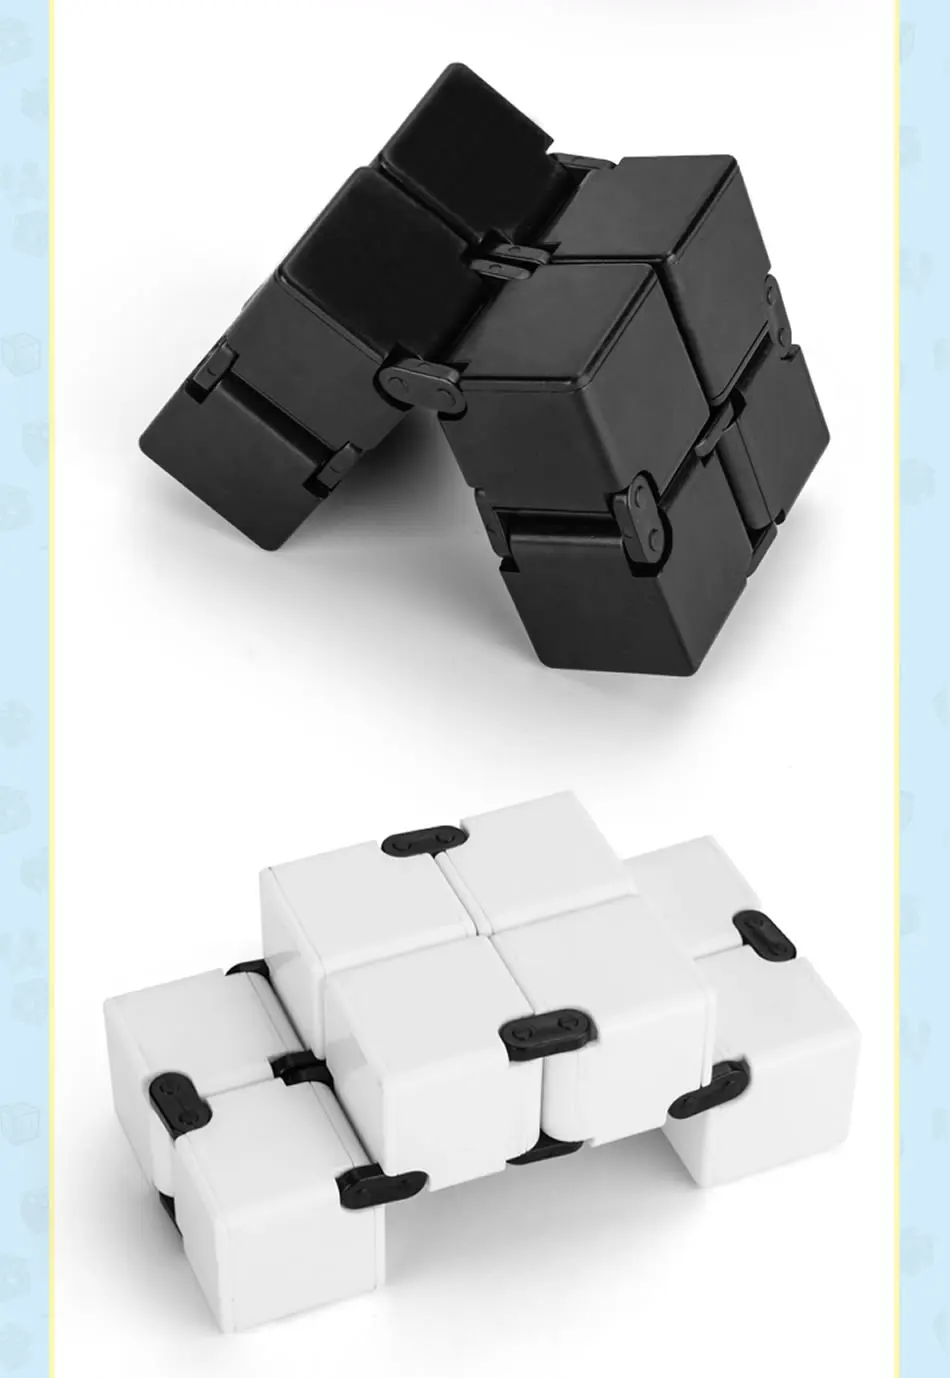 FanXin 2x2x2 Бесконечность магический куб 2x2 Профессиональная головоломка на скорость Twisty Brain Teaser антистресс Развивающие игрушки для детей